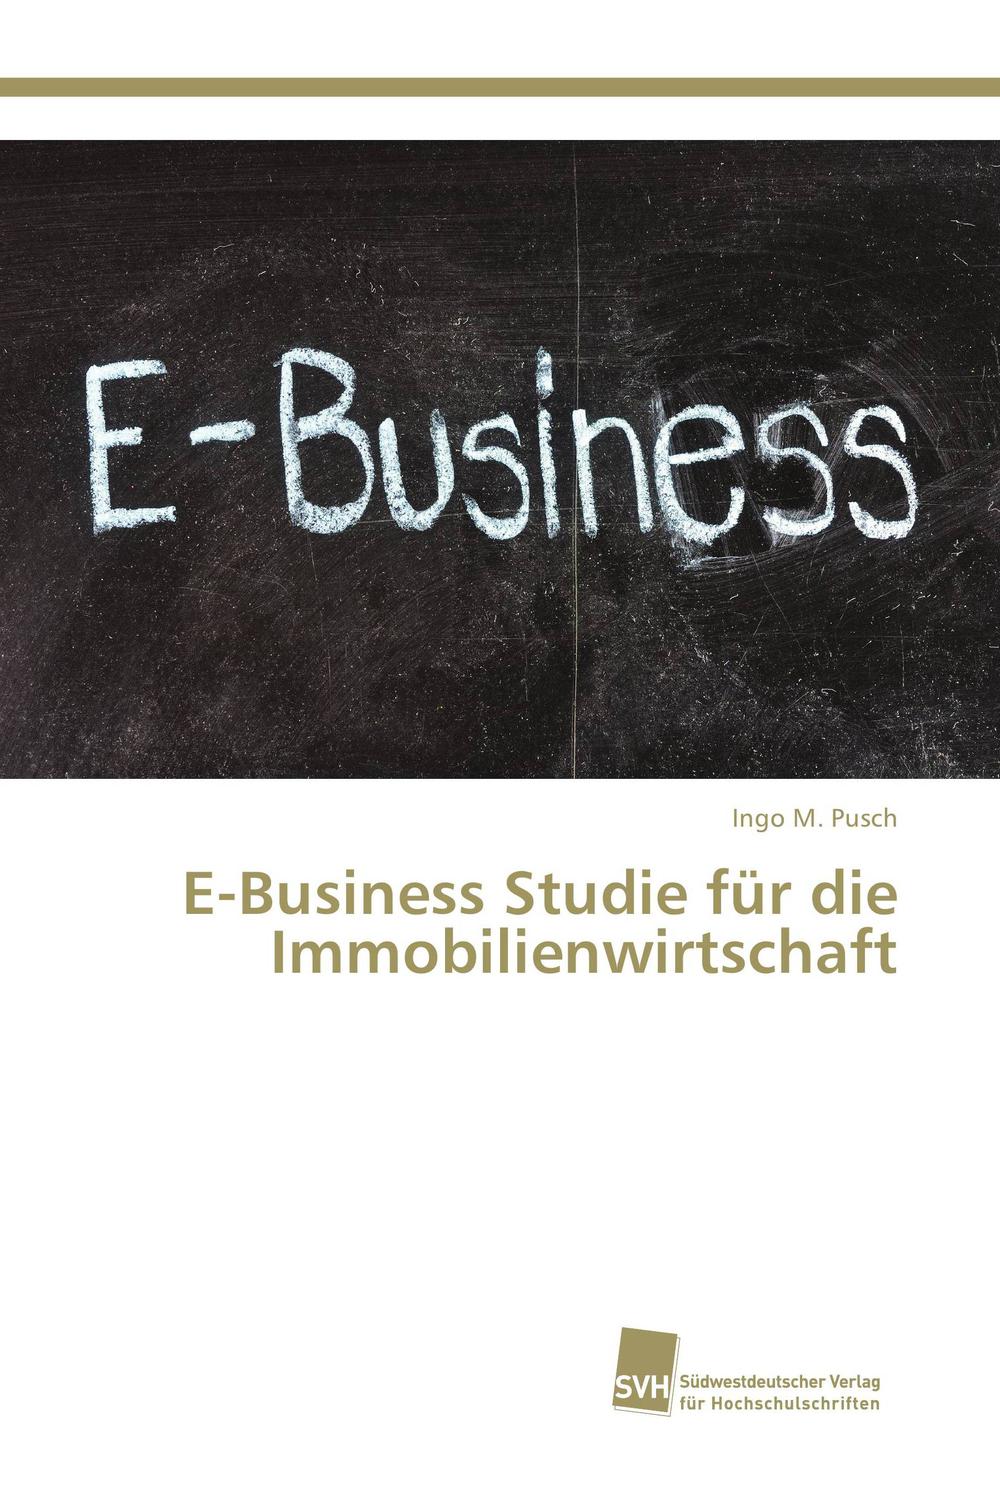 E-Business Studie für die Immobilienwirtschaft - Ingo M. Pusch